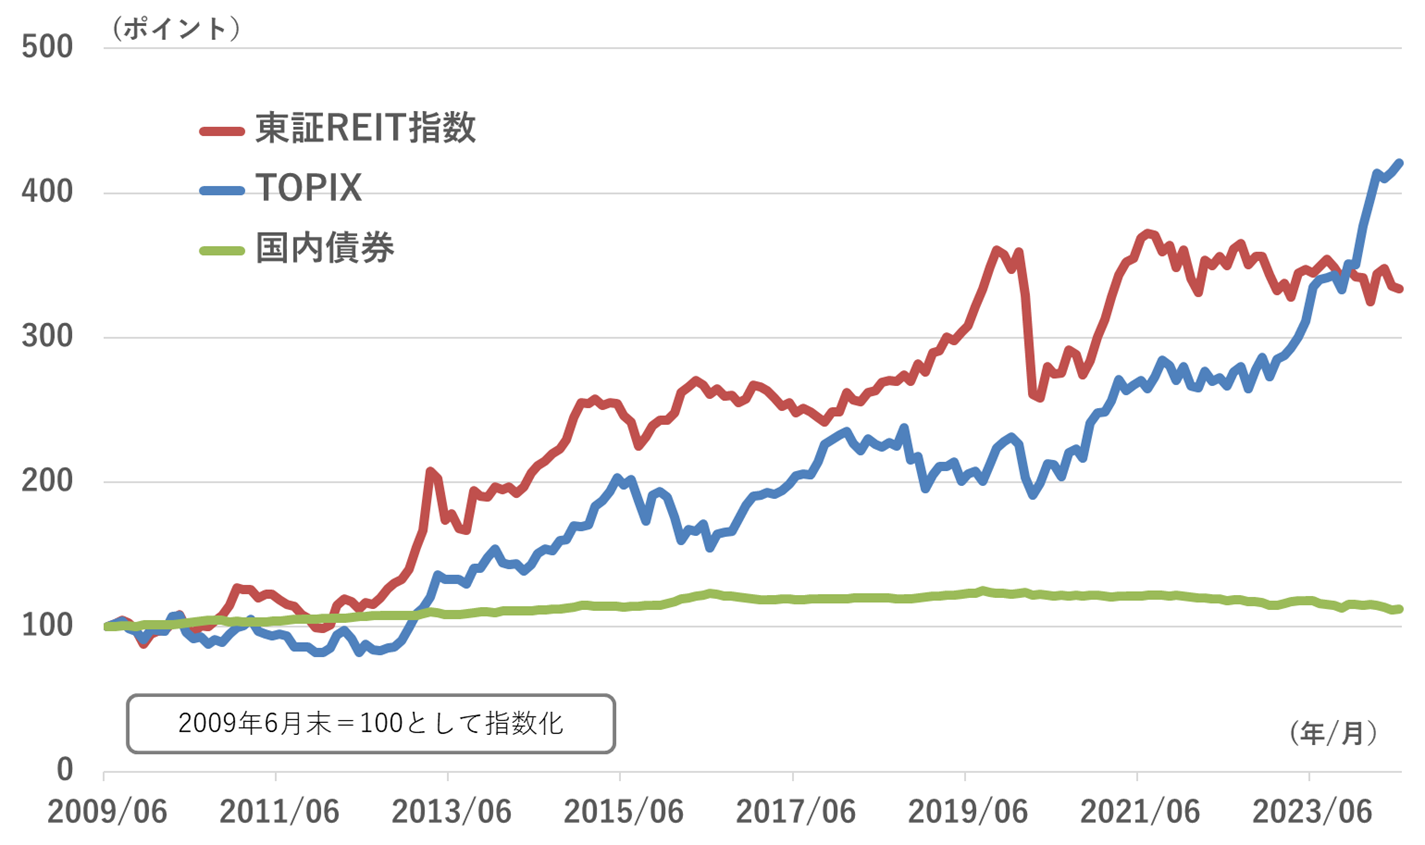 東証REIT指数のパフォーマンス推移グラフ